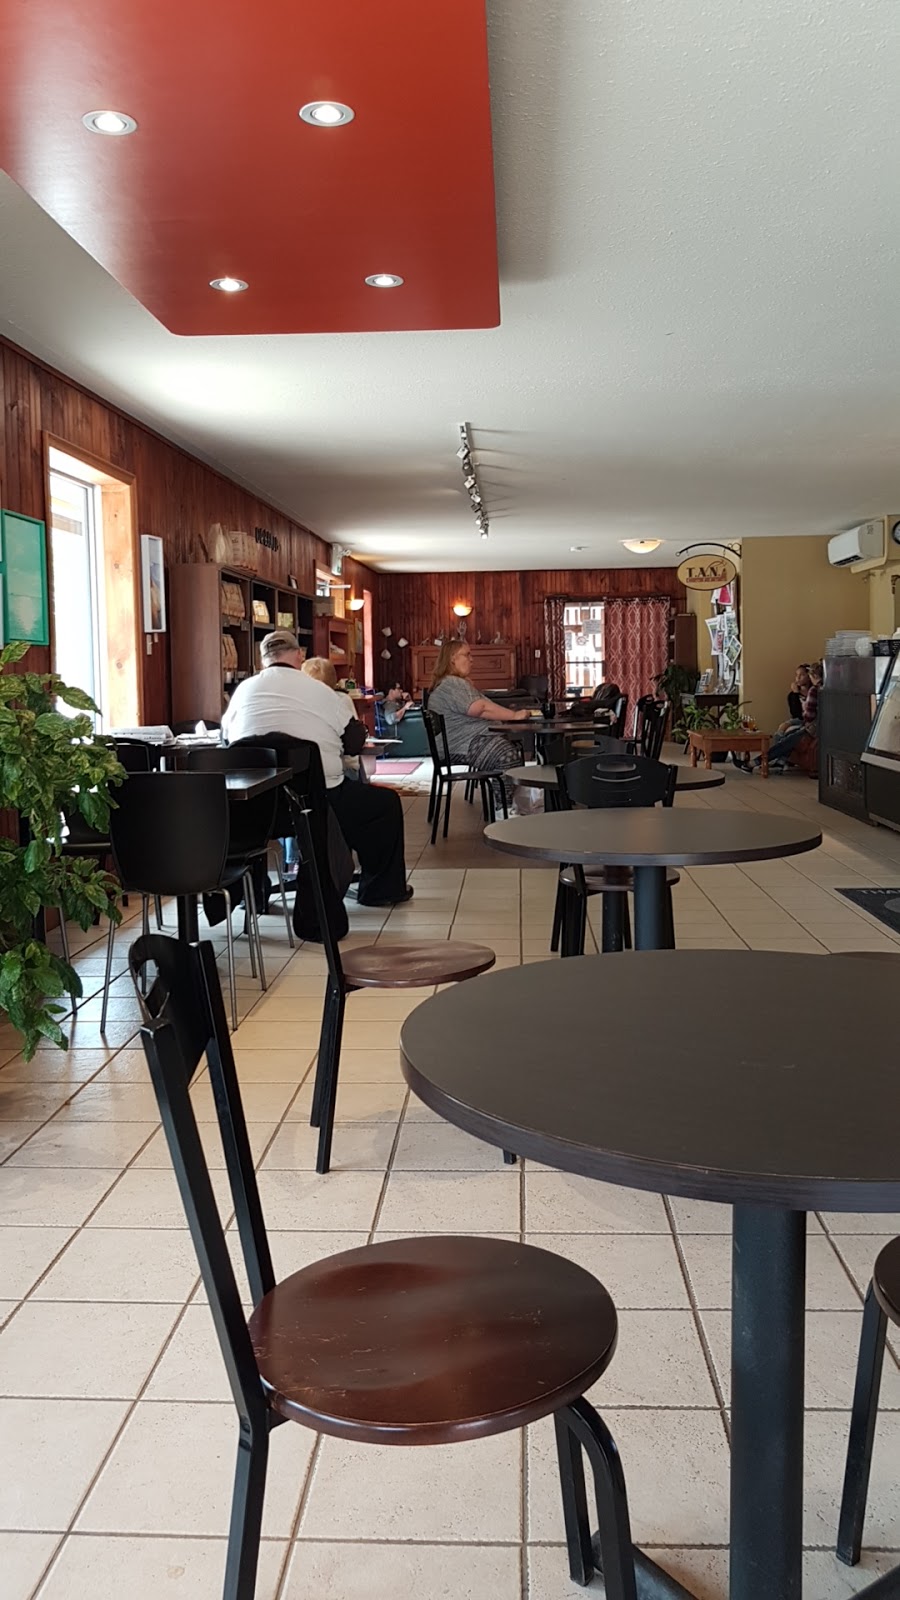 T.A.N. Coffee | 431 Main St, Kentville, NS B4N 1K7, Canada | Phone: (902) 678-1225